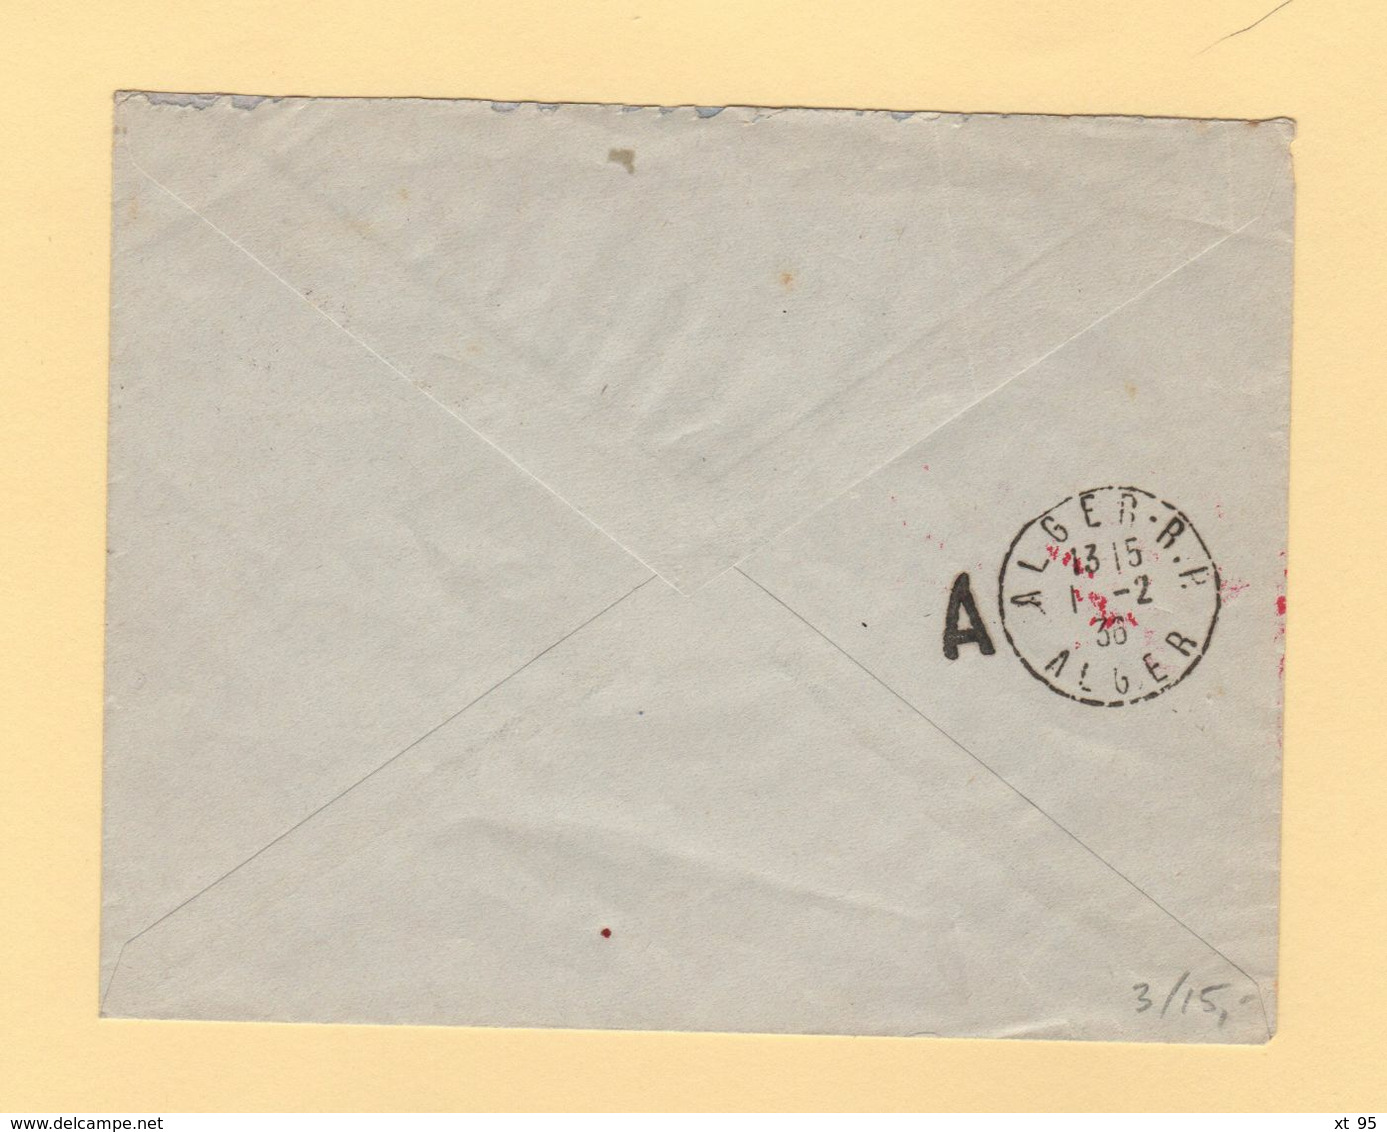 Tunisie - Premier Courrier Postal Aerien Tunisie Algerie - 1er Fevrier 1936 - Posta Aerea